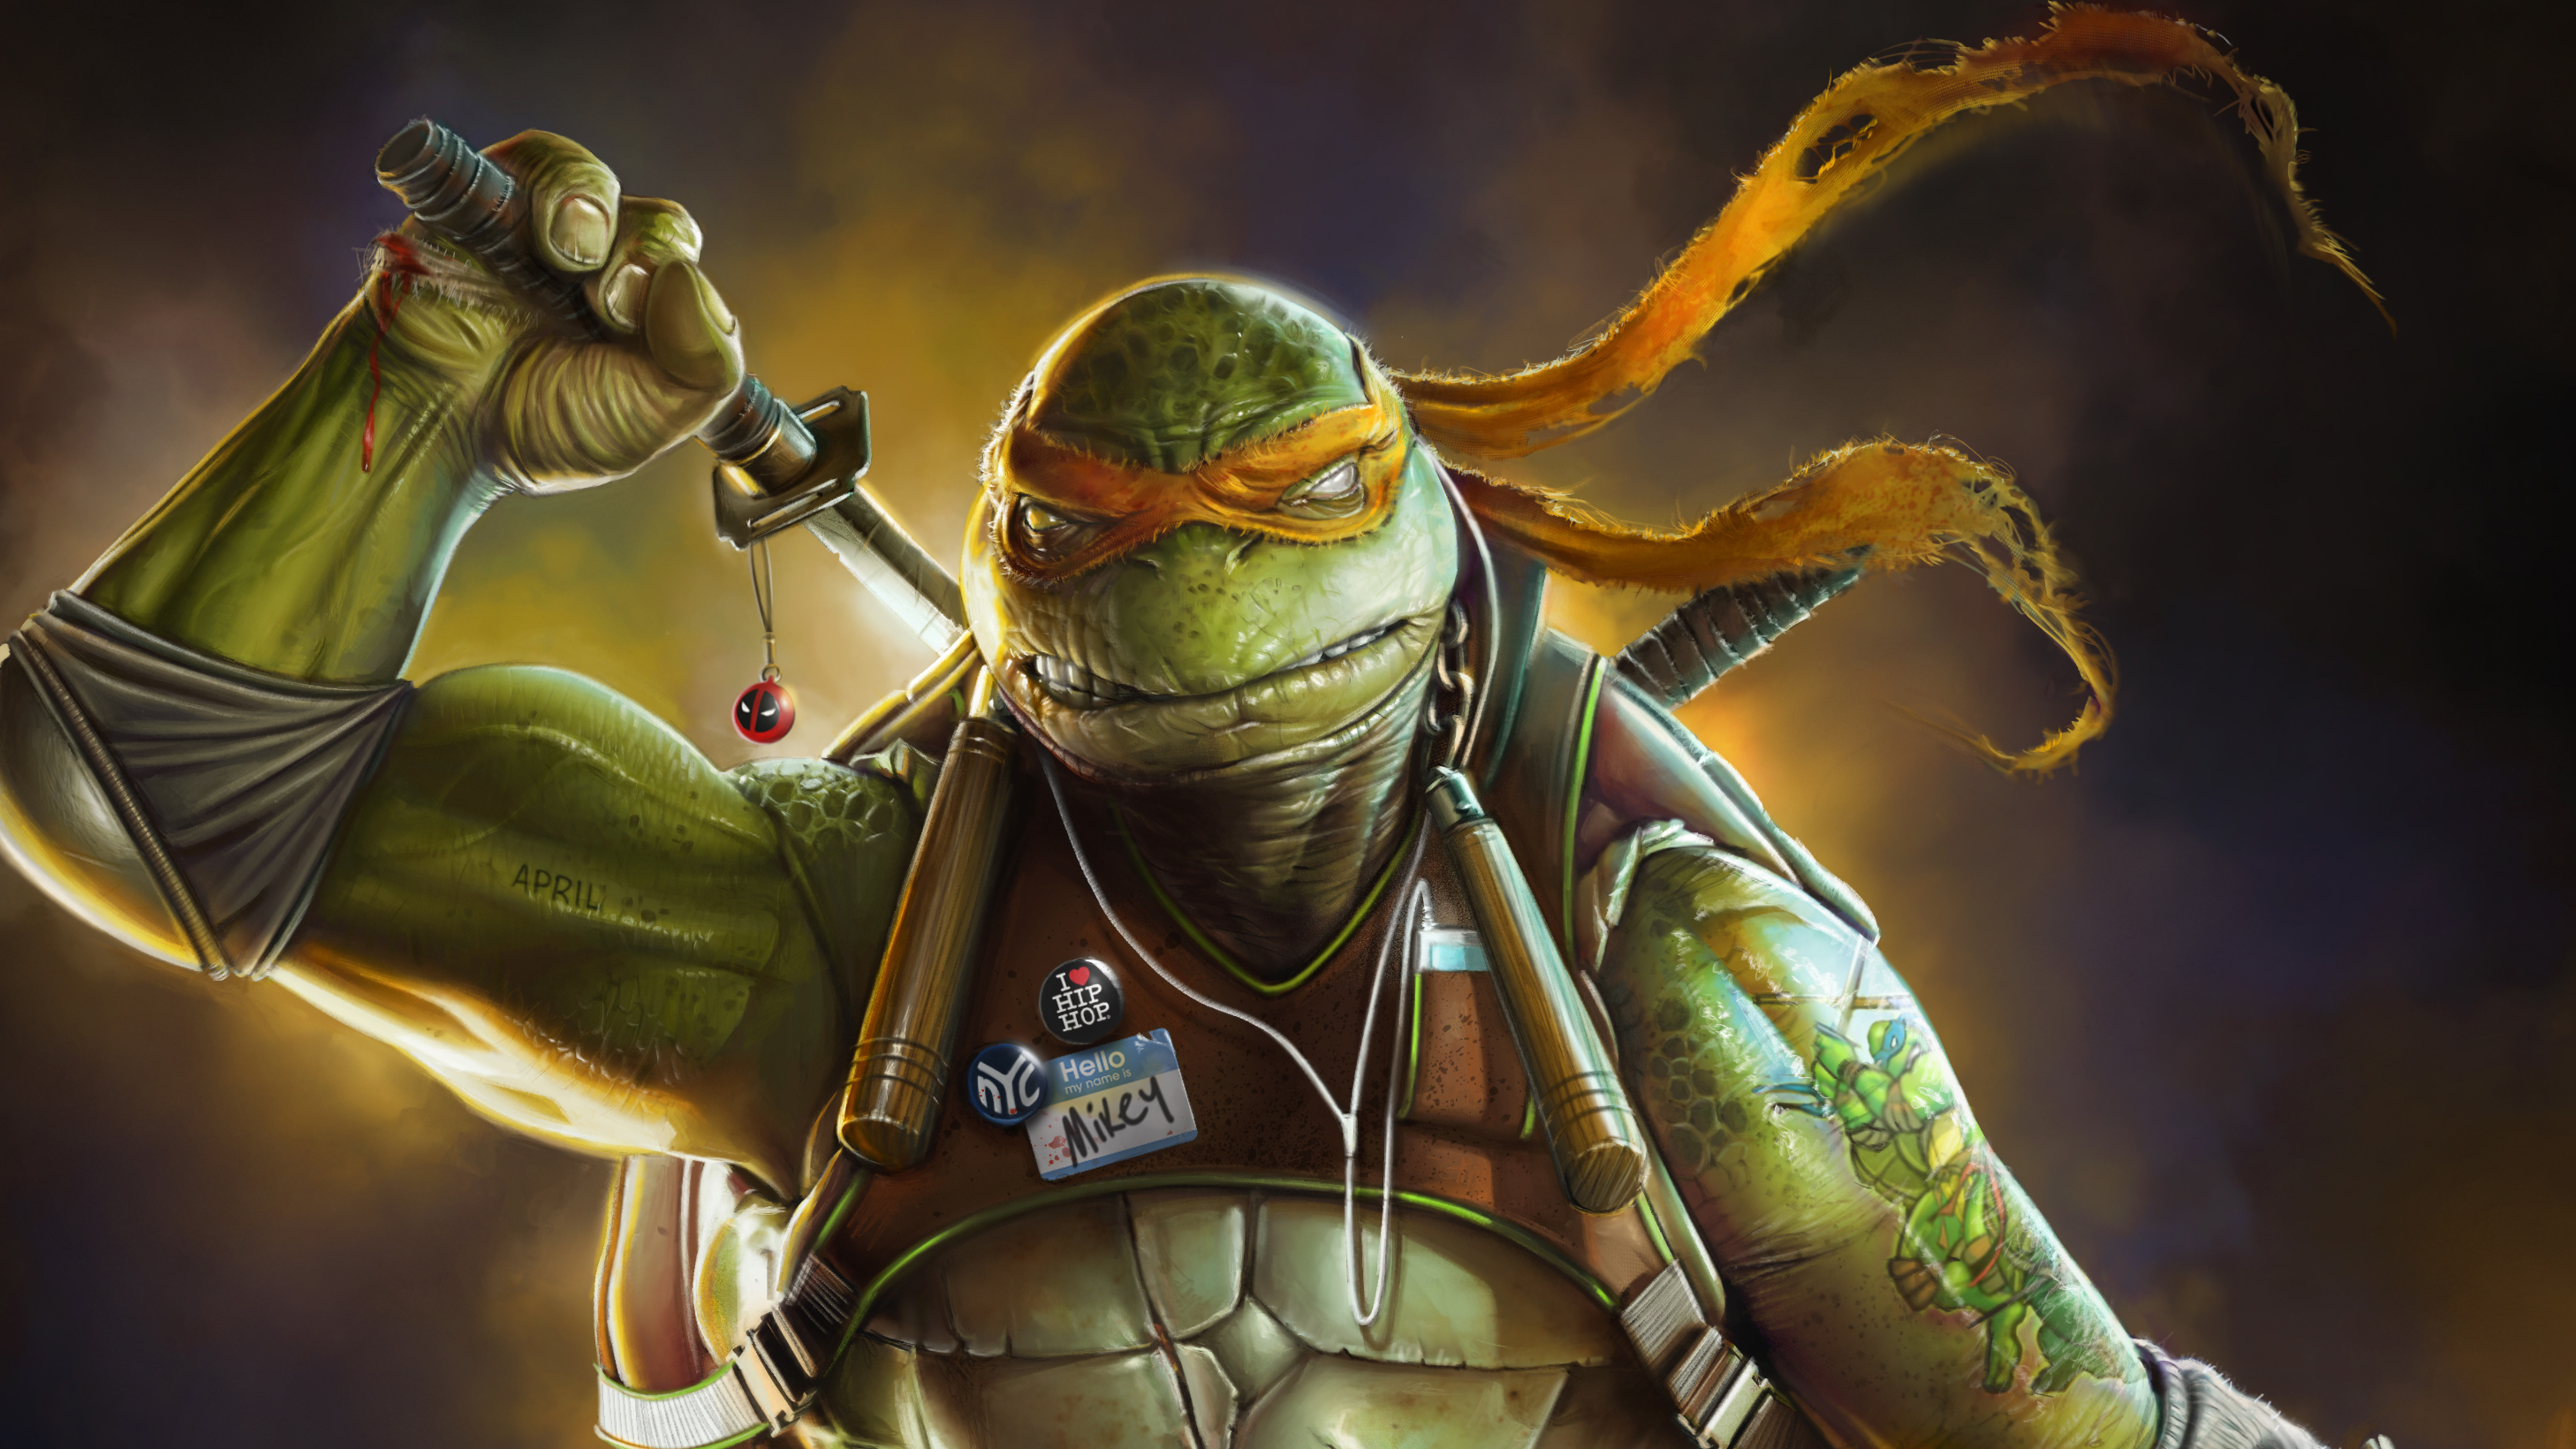 Teenage mutant ninja turtles ninja turtle hd k artwork behance digital art artist superheroes